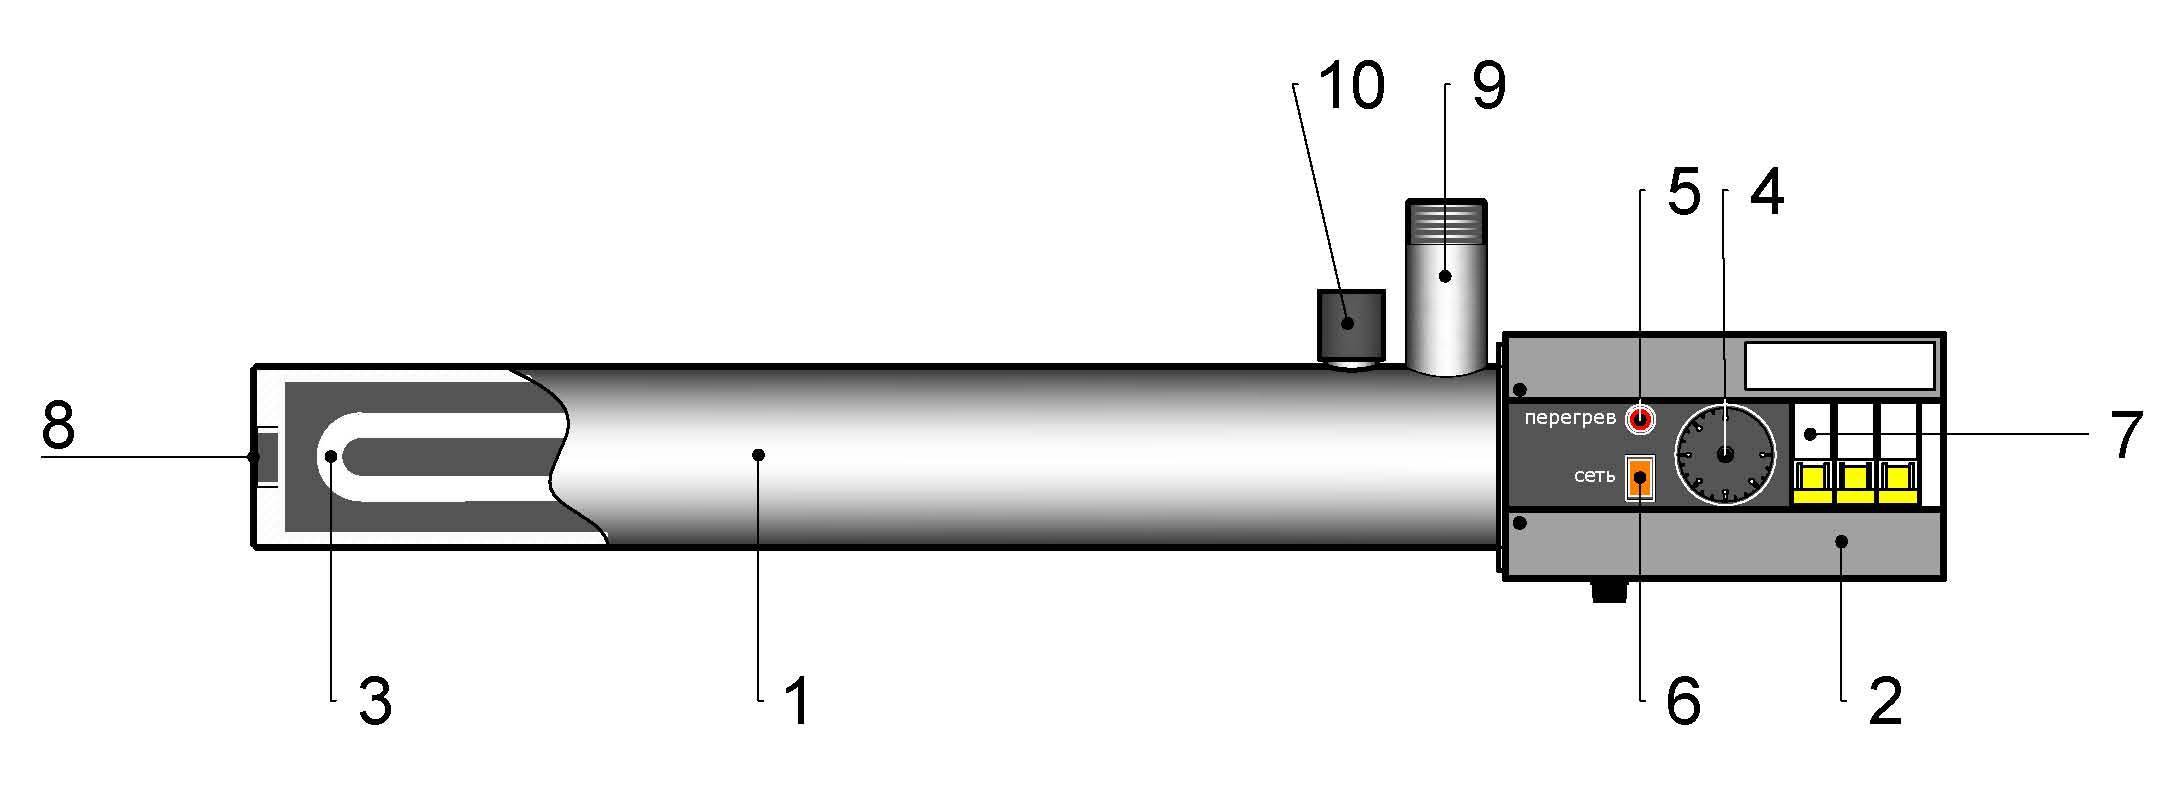 Теплоноситель хнт-35 – идеален для электродных котлов